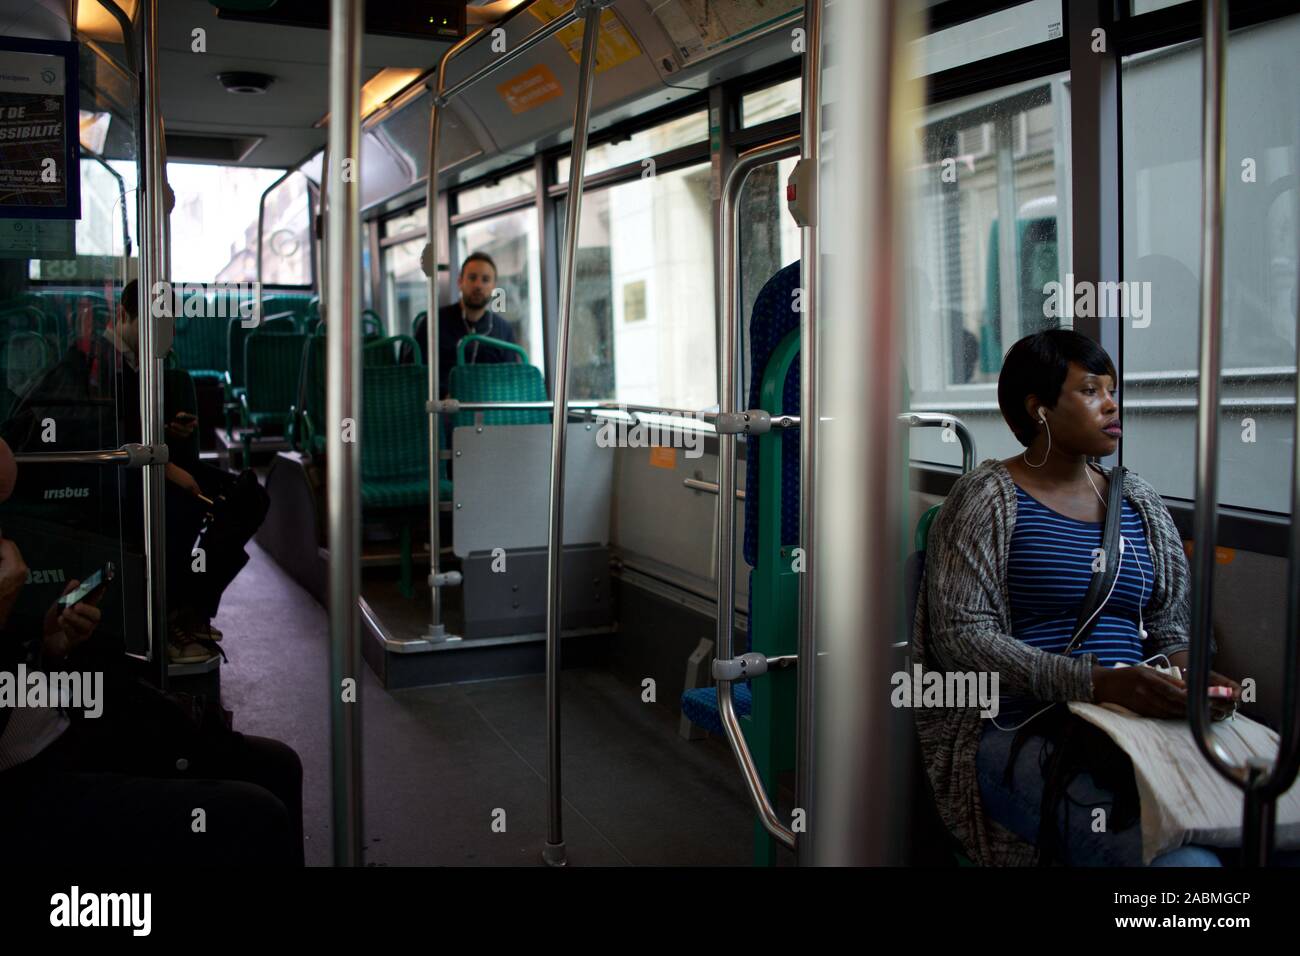 Bus passengers travelling, Paris, France Stock Photo